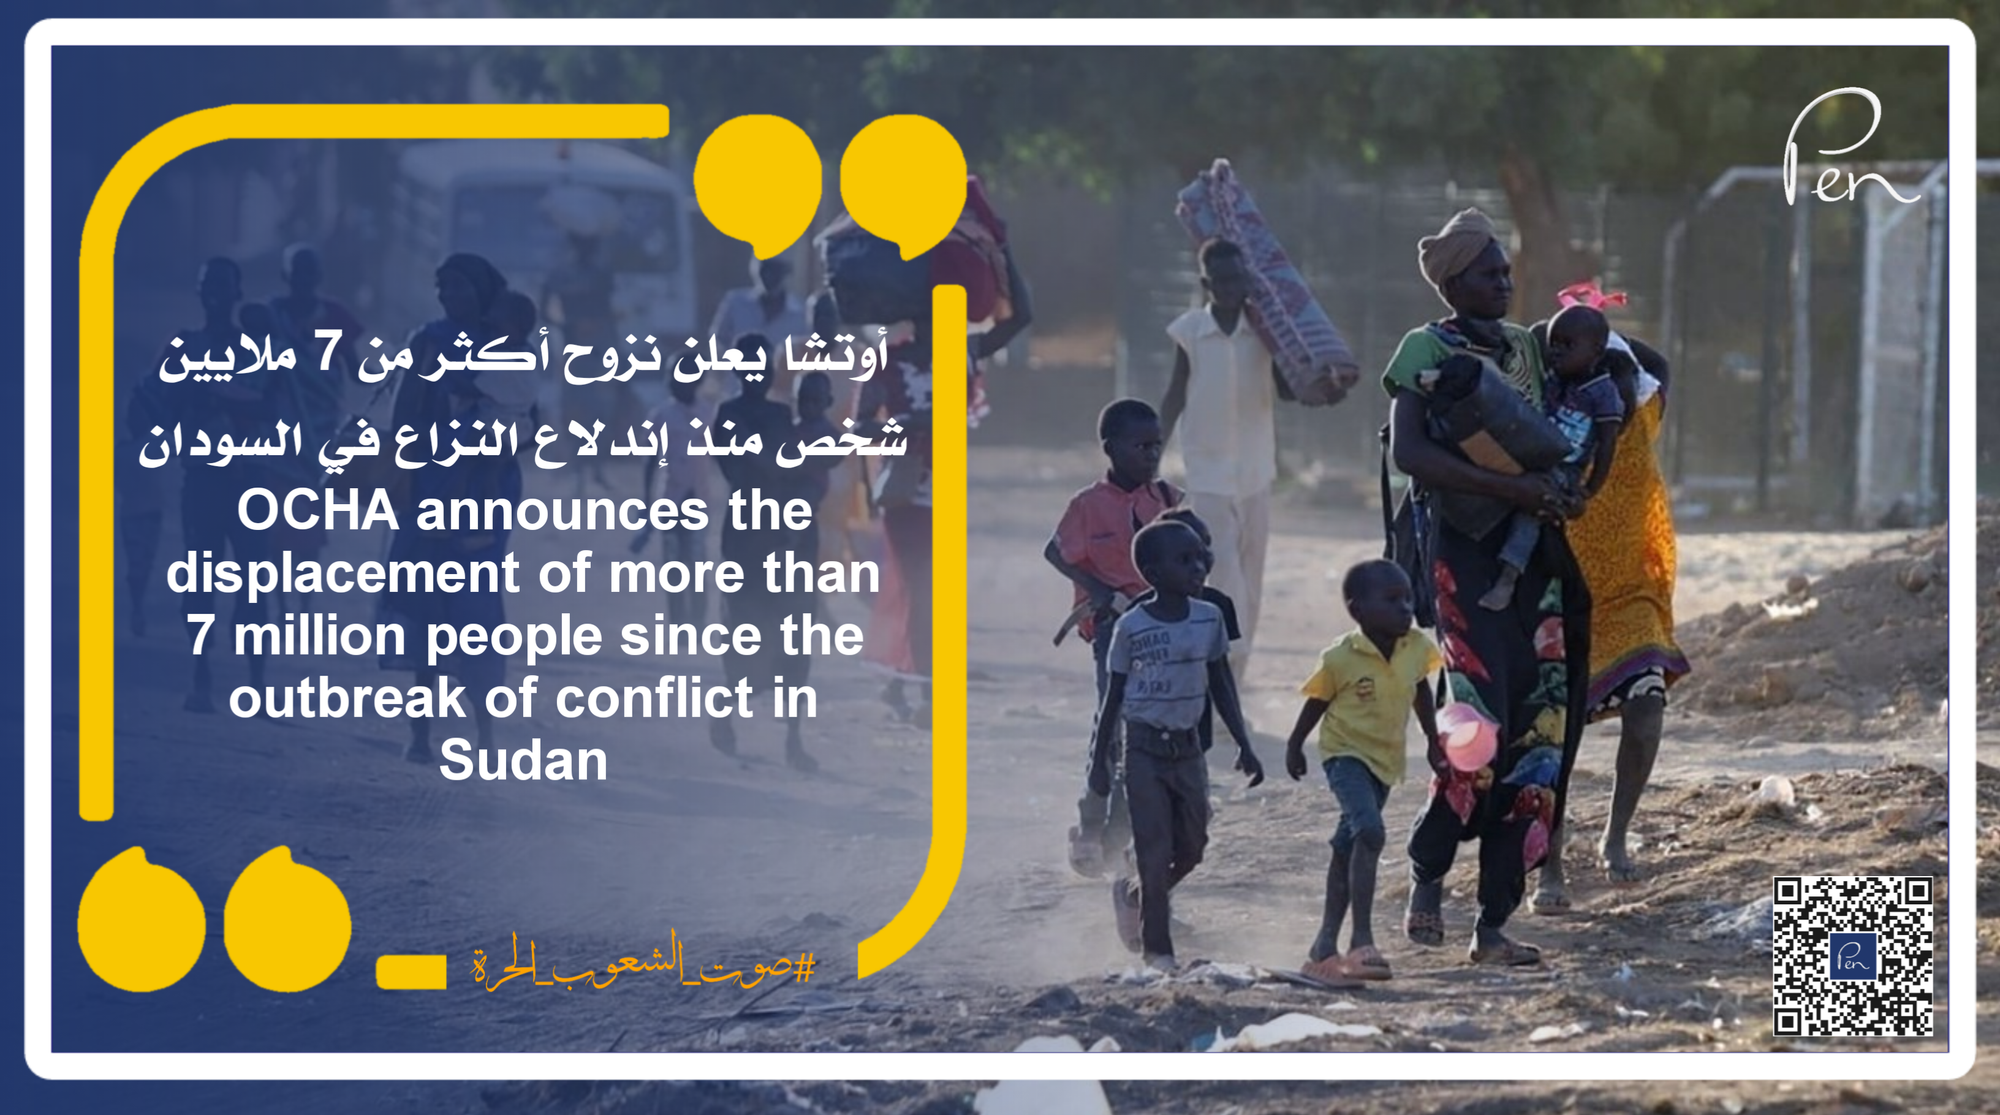 أوتشا يعلن نزوح أكثر من 7 ملايين شخص منذ إندلاع النزاع في السودان